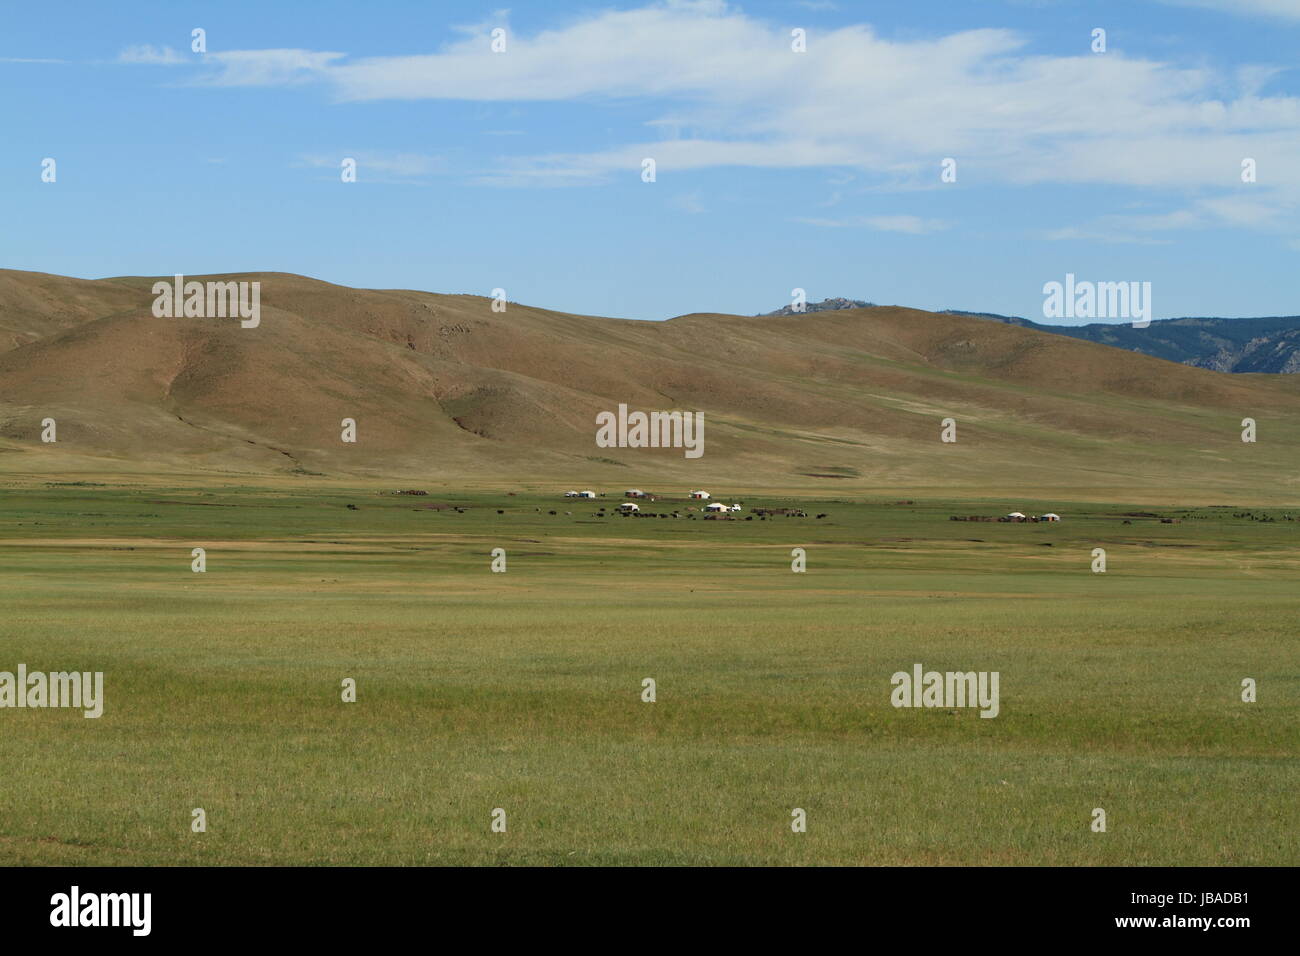 Le parc national de khustain mongolie Banque D'Images